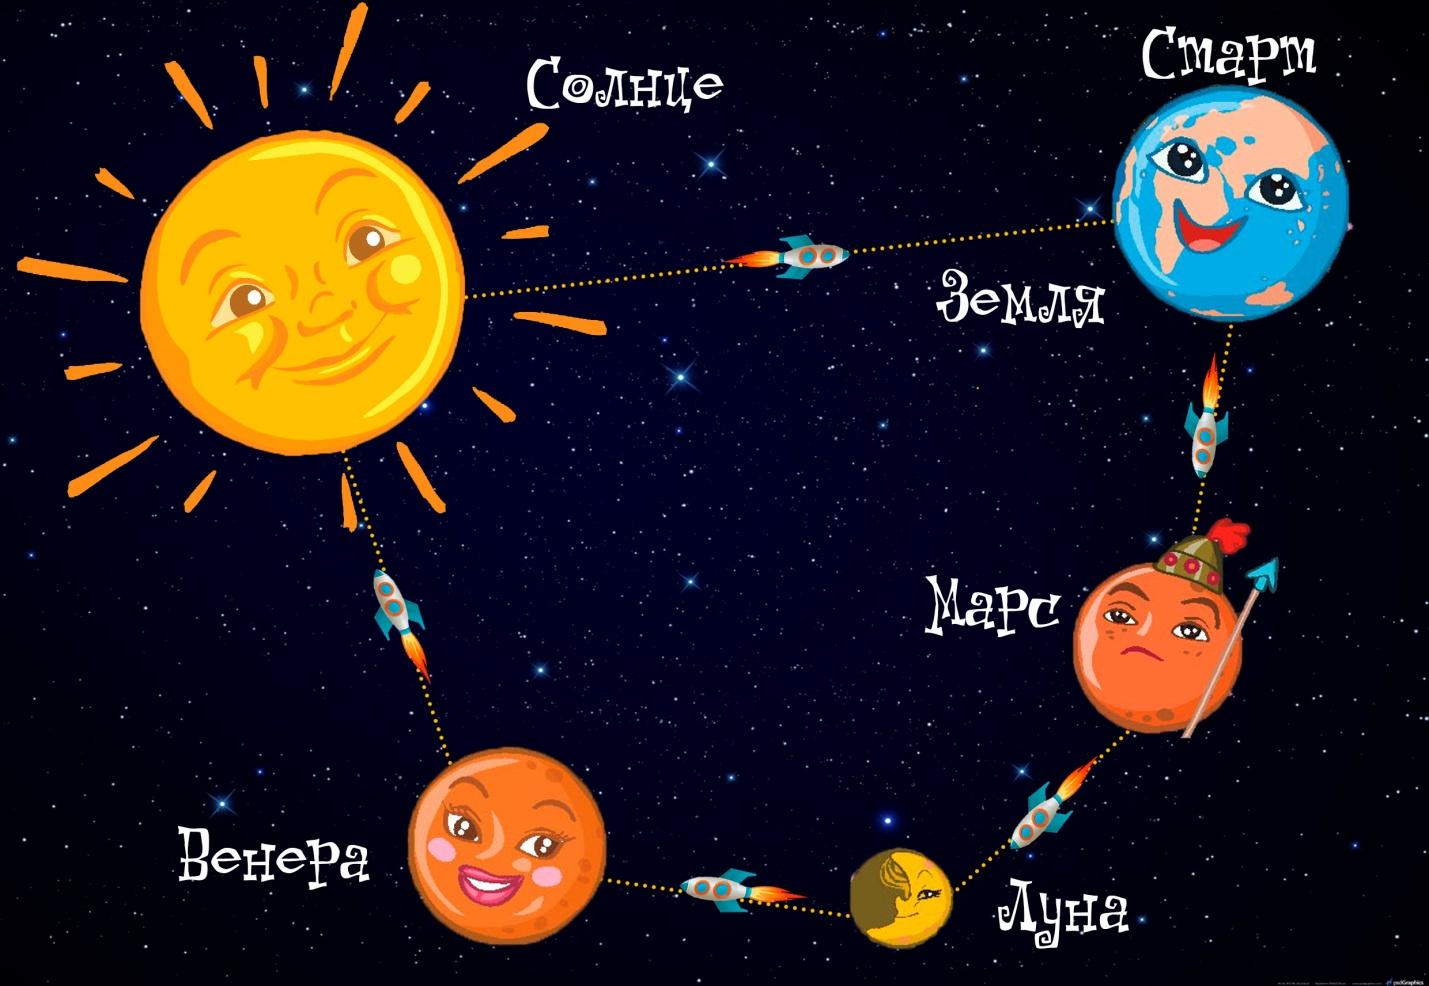 Земля планета солнечной системы вопросы. Планеты солнечной системы для детей. Космос для дошкольников. Расположение планет для дошкольников. Солнечная система для детей.